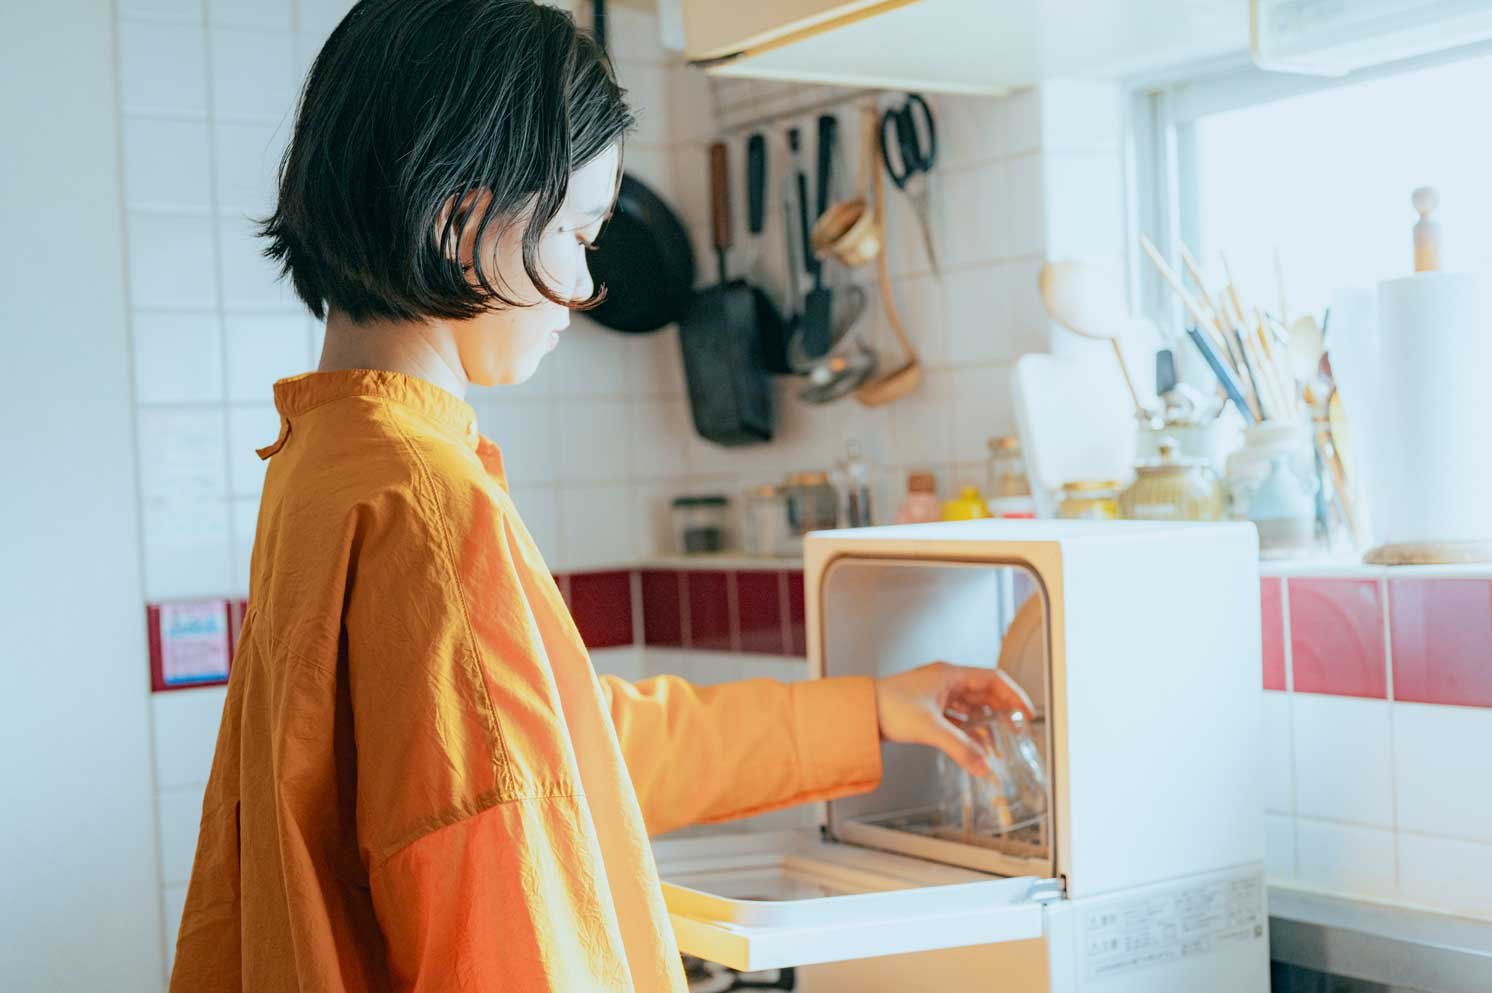 パーソナル食洗機「SOLOTA」に食器を入れる山口さん | Make New Magazine「未来の定番」をつくるために、パナソニックのリアルな姿を伝えるメディア